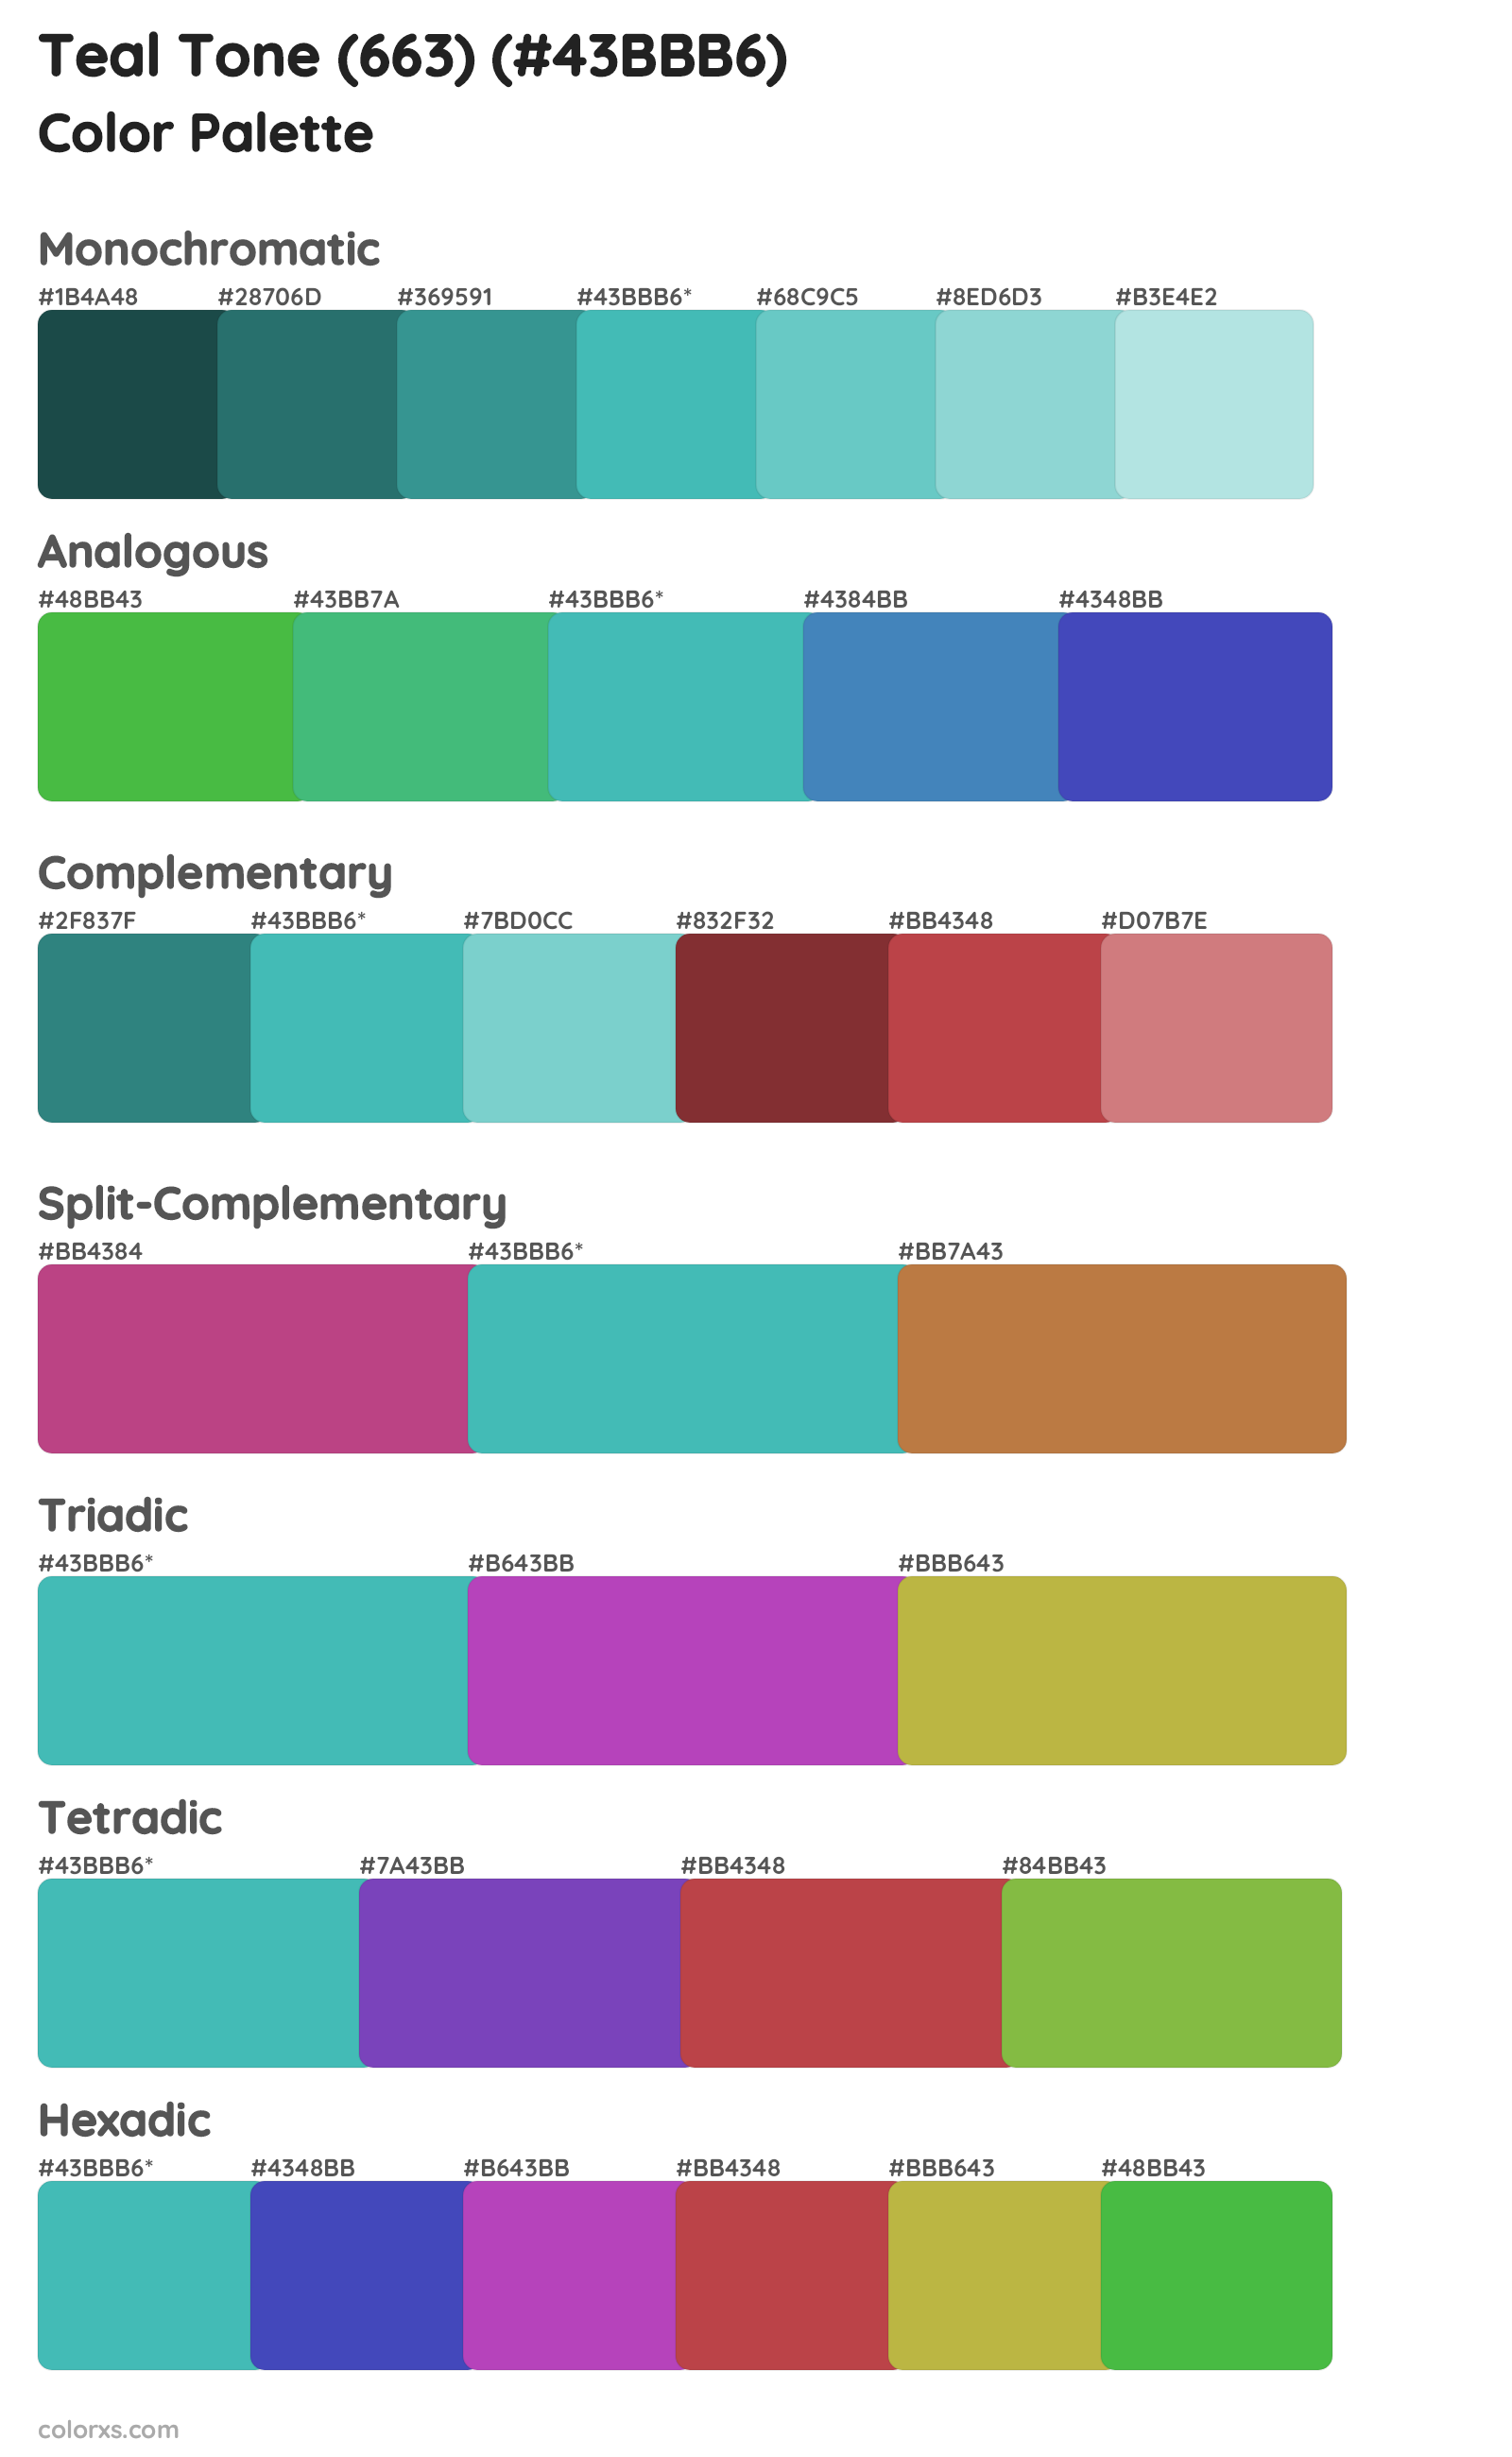 Teal Tone (663) Color Scheme Palettes